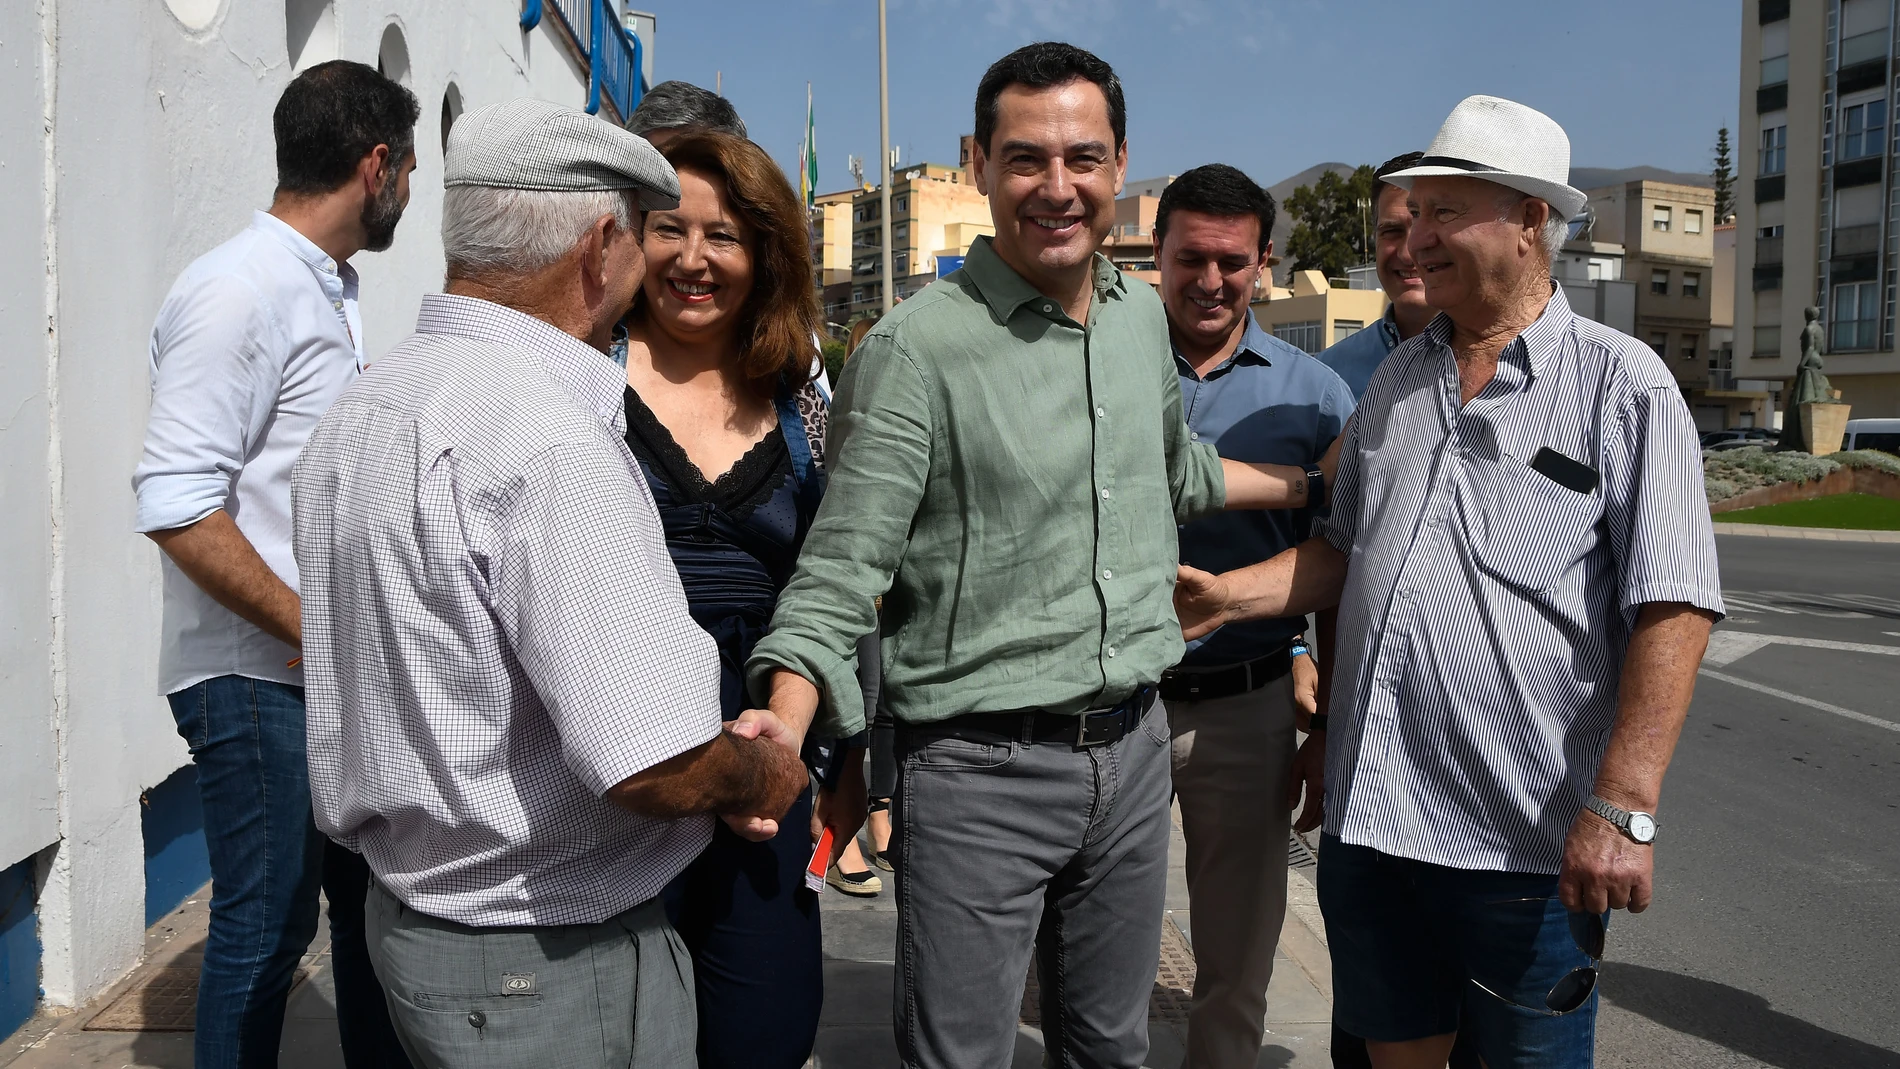 ADRA (ALMERÍA), 09/07/2023. - El presidente del PP en Andalucía, Juanma Moreno (c), saluda a varios simpatizantes a su llegada a un acto con militantes en Adra, Almería. EFE / Carlos Barba